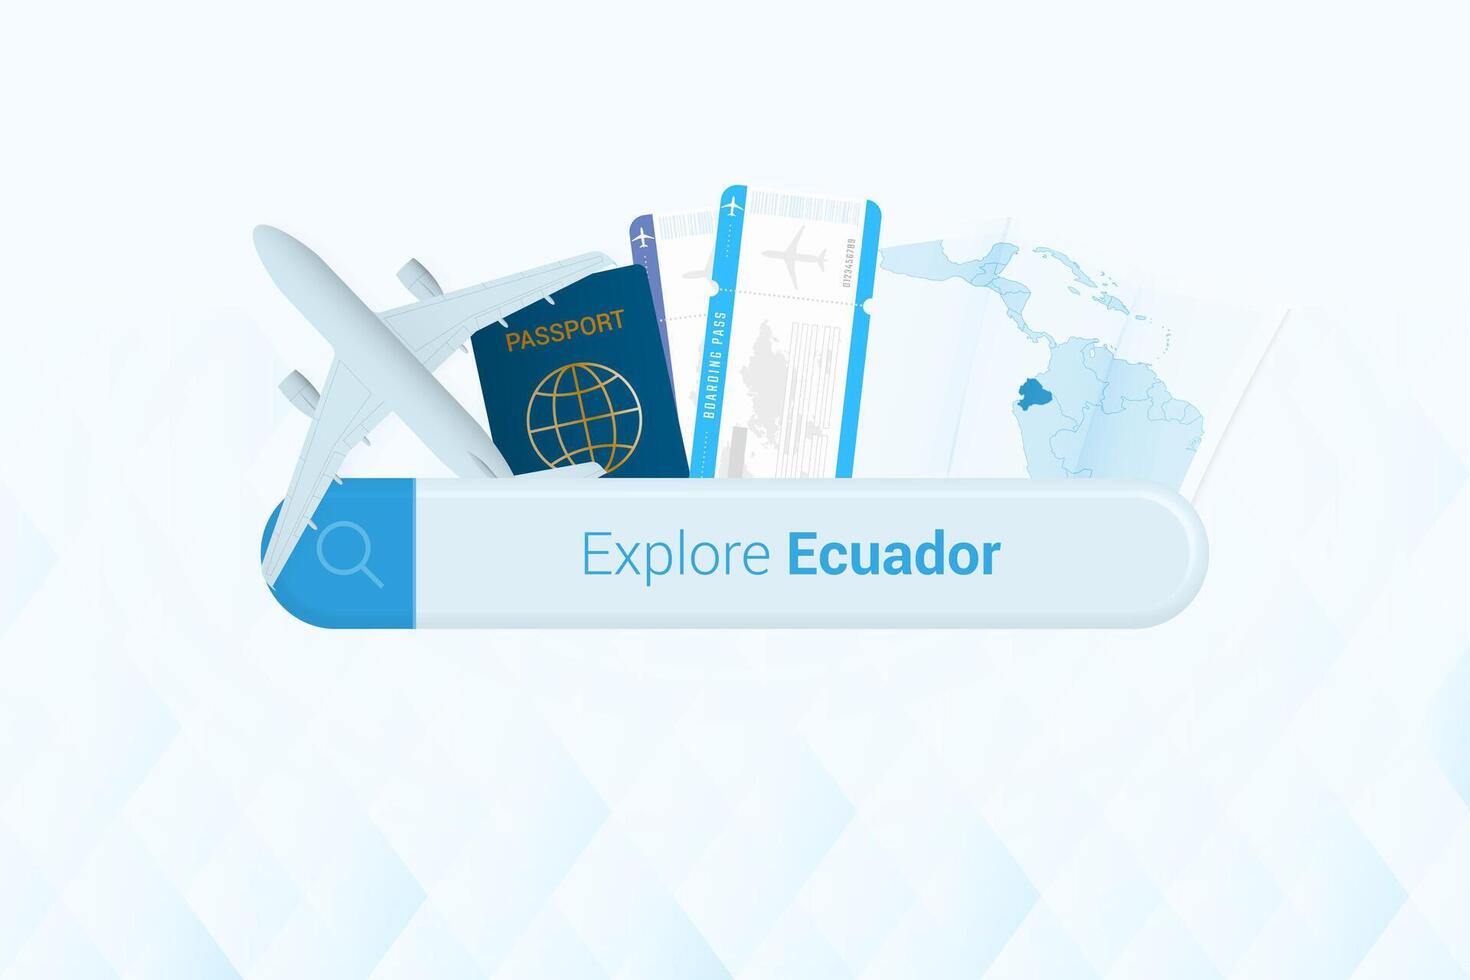 recherche des billets à équateur ou Voyage destination dans équateur. recherche bar avec avion, passeport, embarquement passer, des billets et carte. vecteur